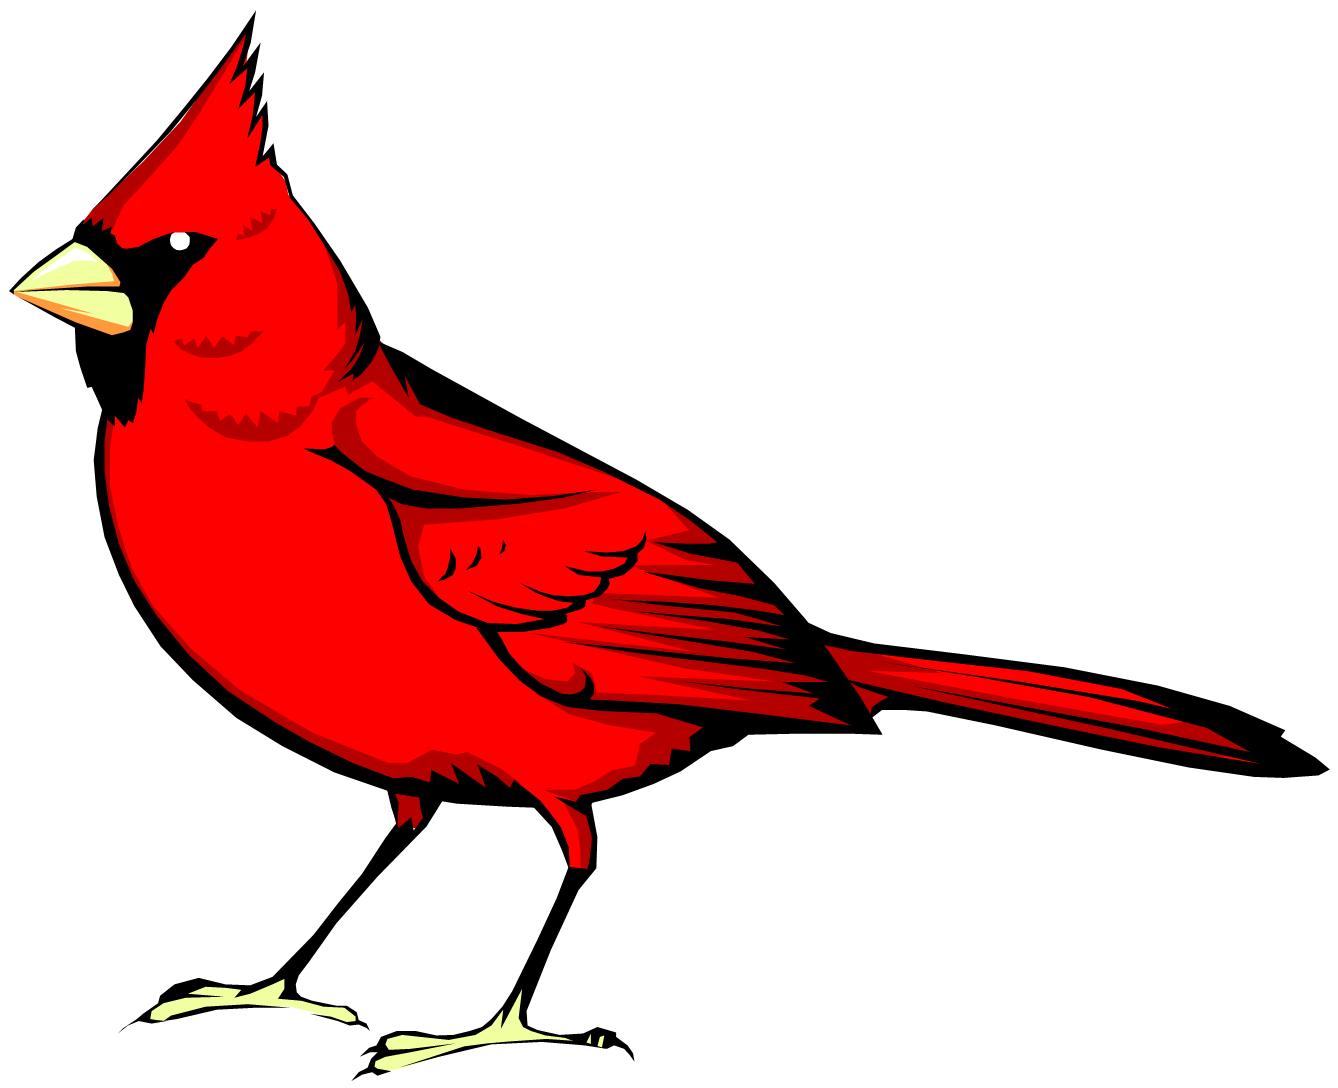 cardinals baseball clipart free download - photo #47